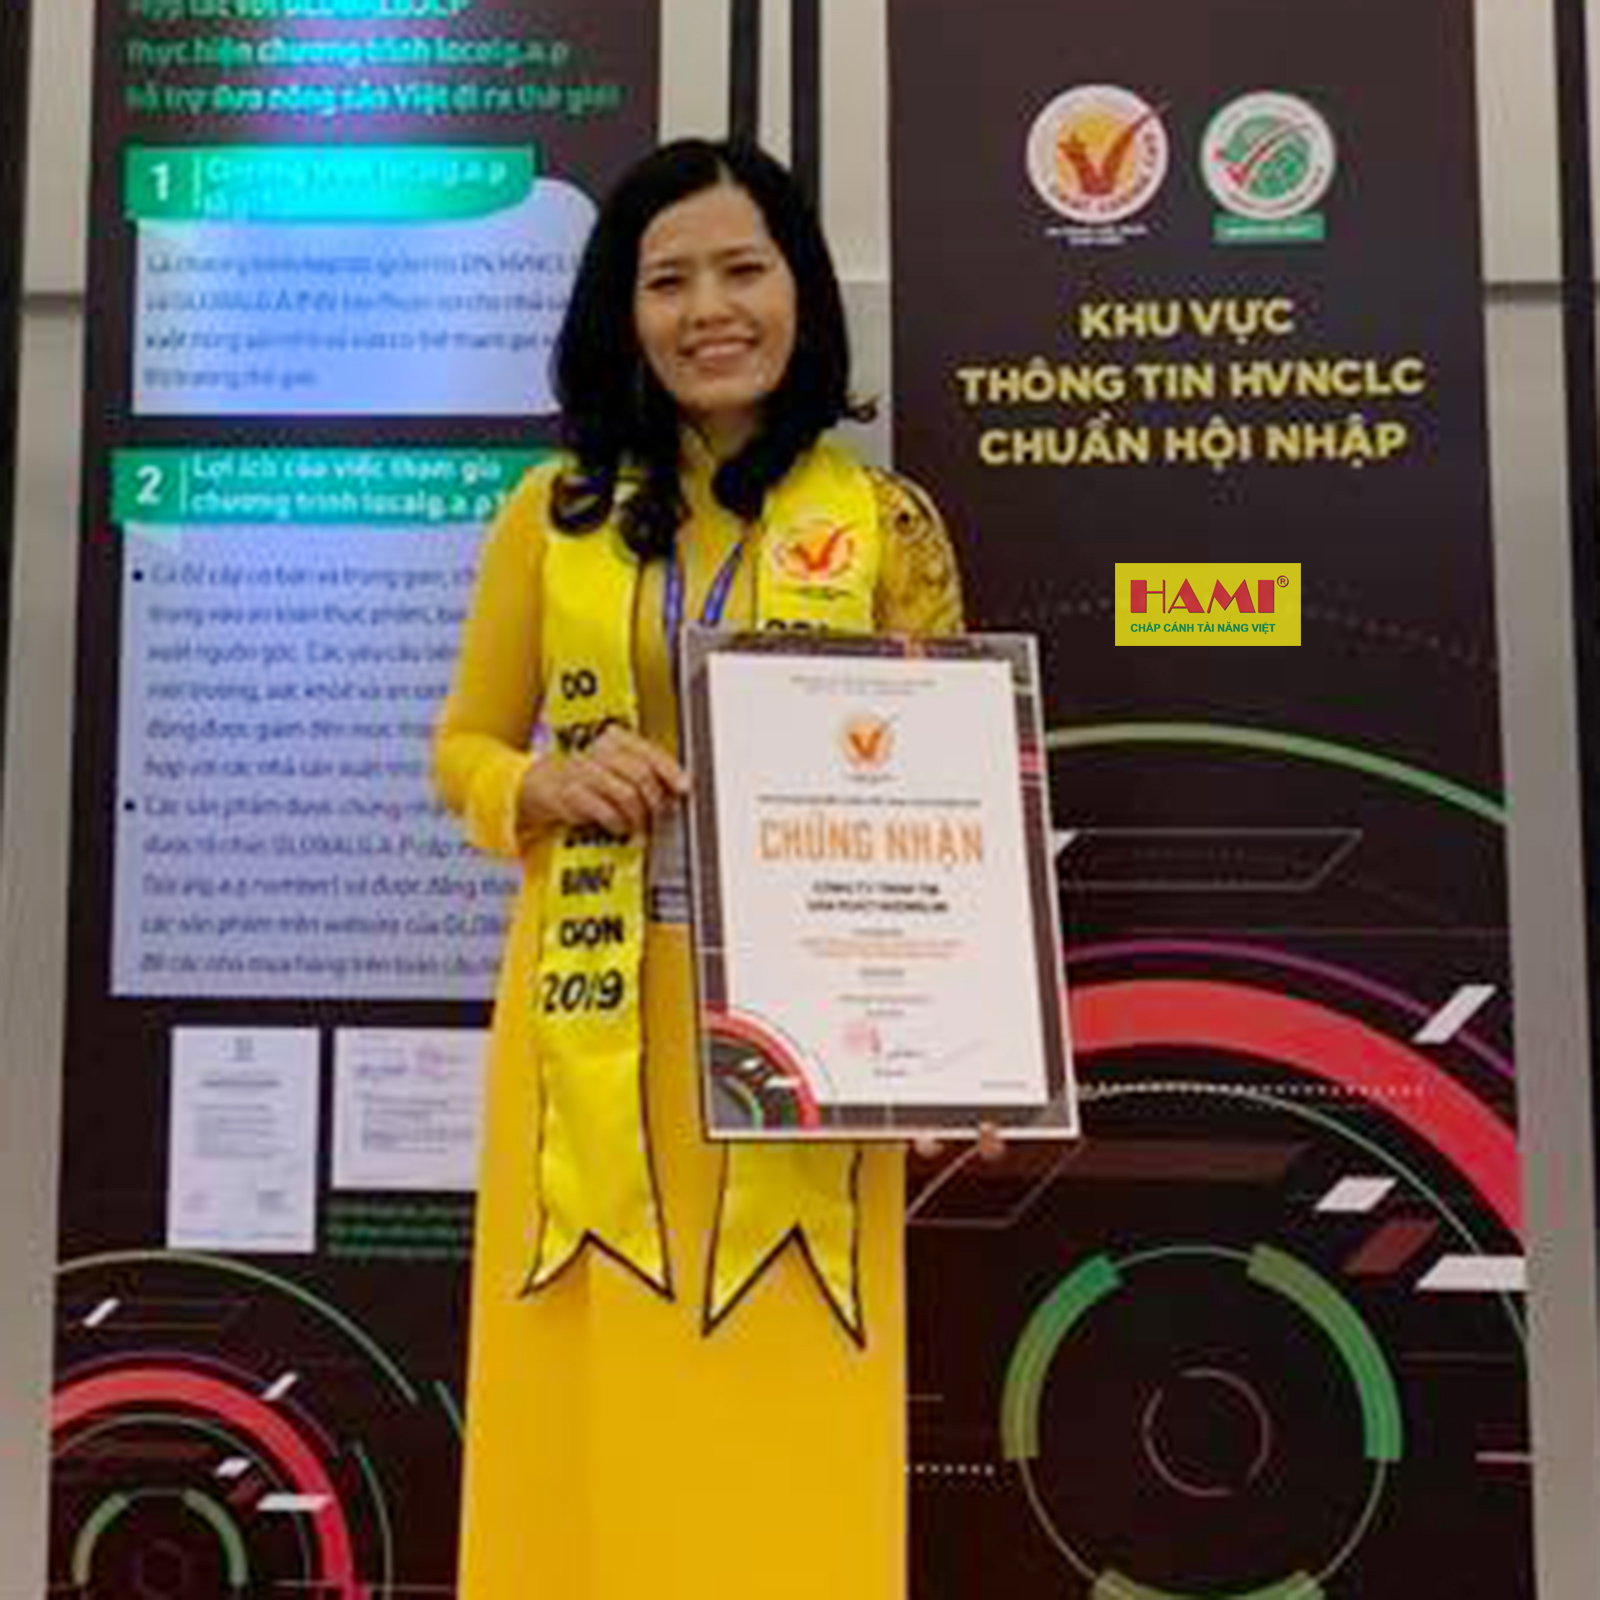 HAMI : Vinh dự nhận danh hiệu “Hàng Việt Nam chất lượng cao” năm 2019